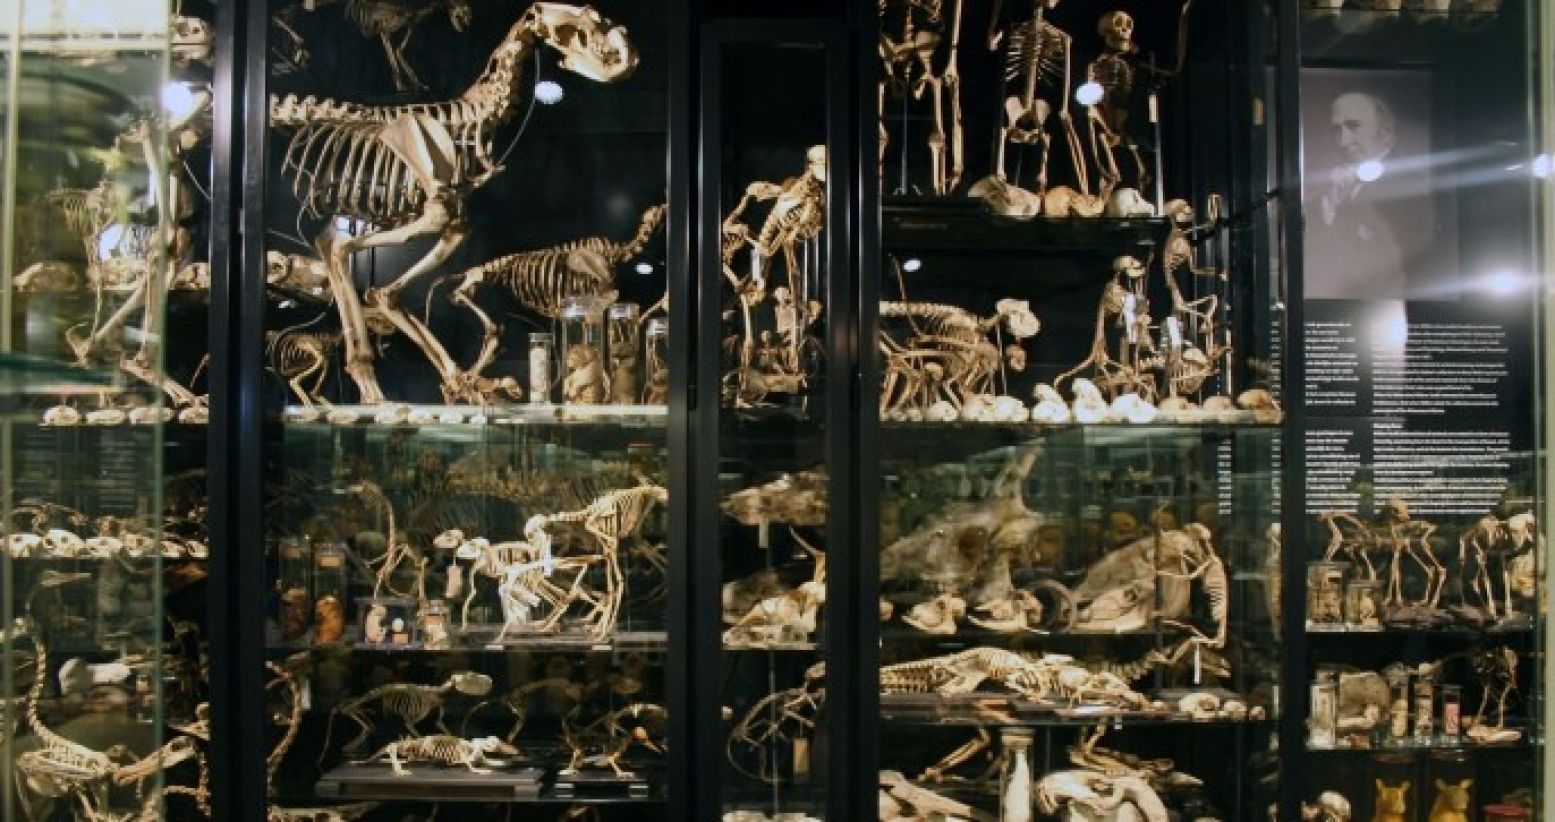 In Museum Vrolik vind je ook een uitgebreid dierenkabinet. Foto: Paul Bomers, via Museum Vrolik